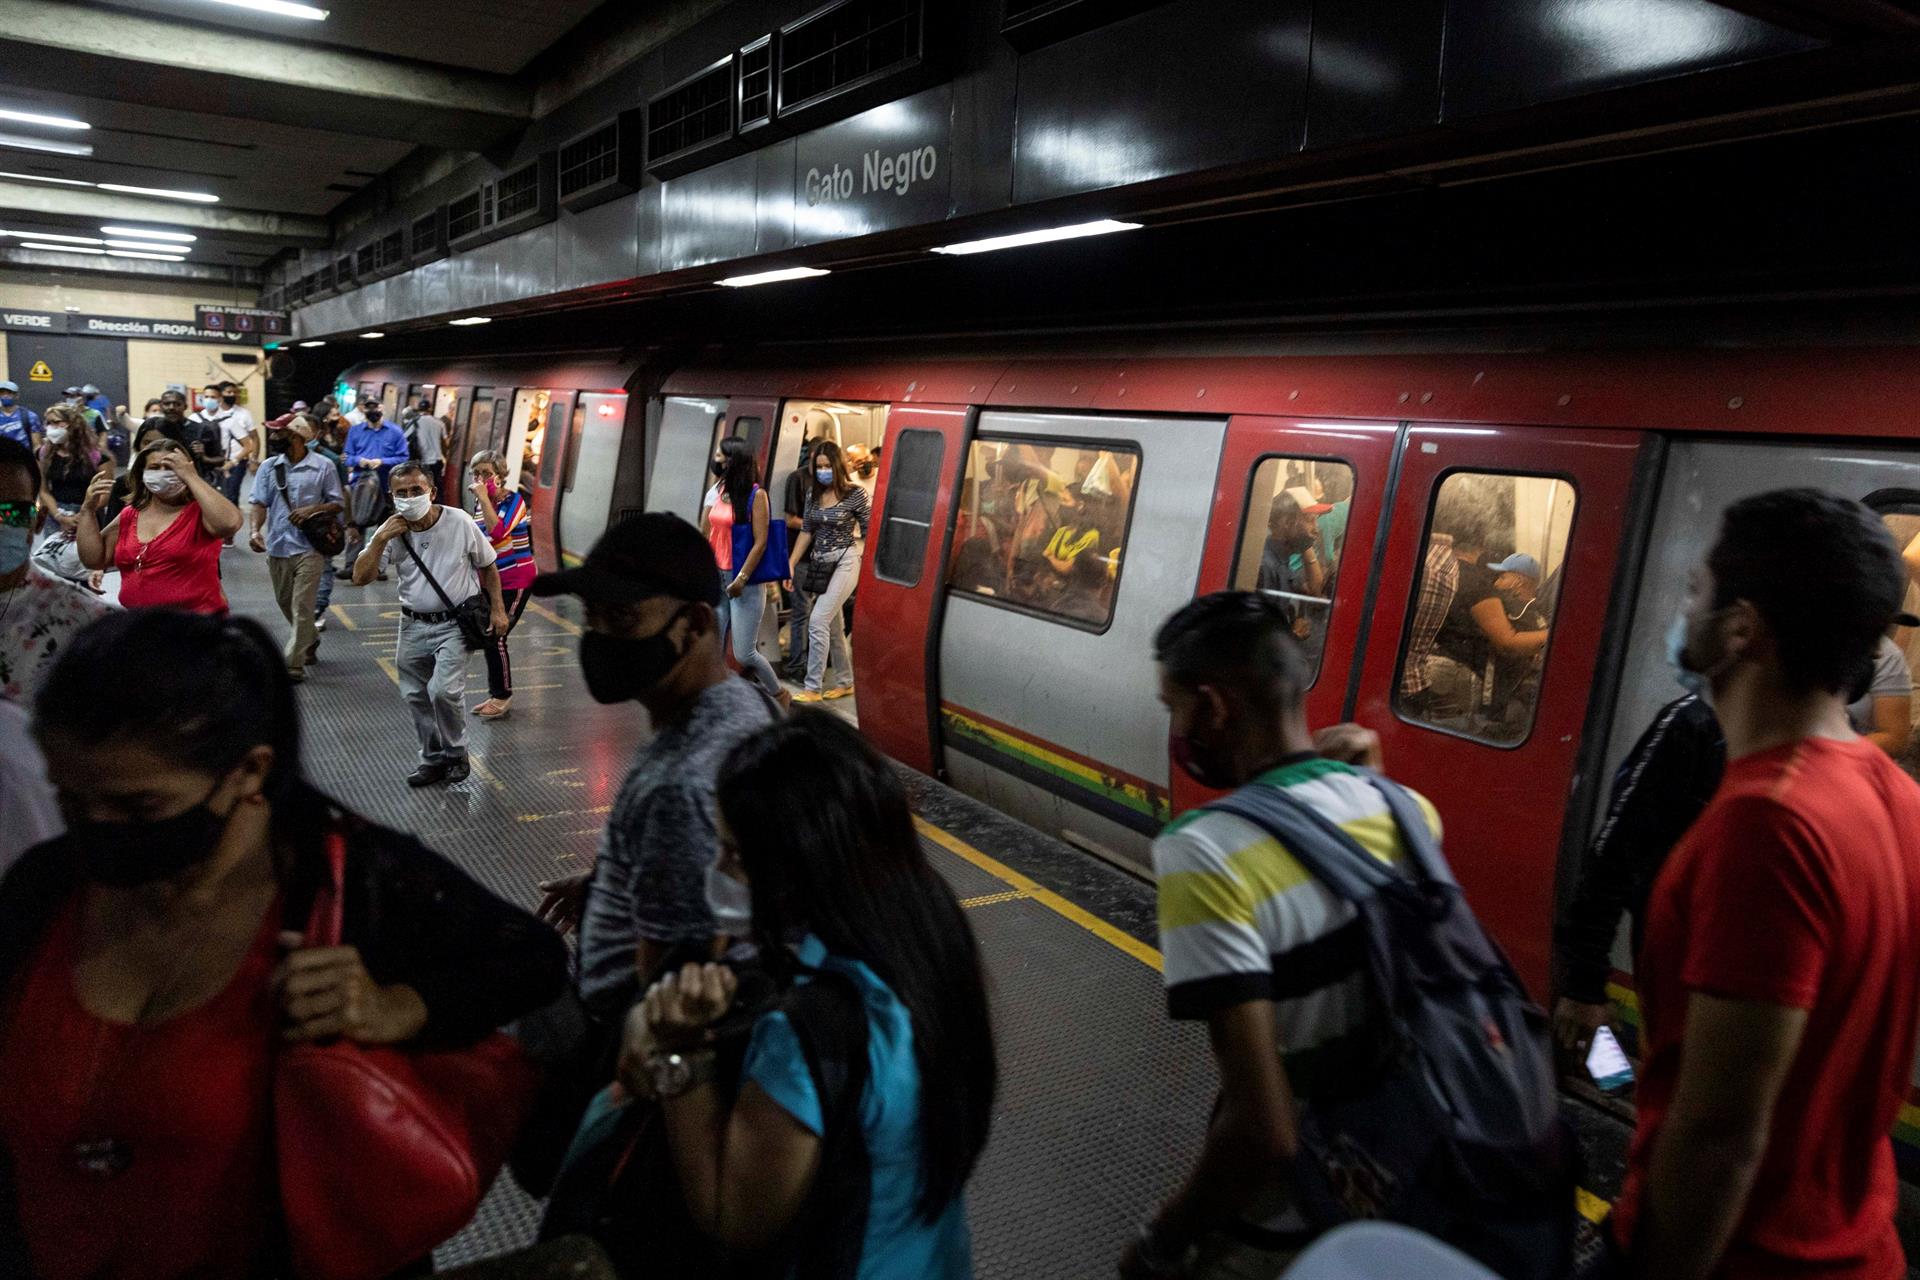 Reportan arrollamiento en la estación Gato Negro del Metro de Caracas #14Sep